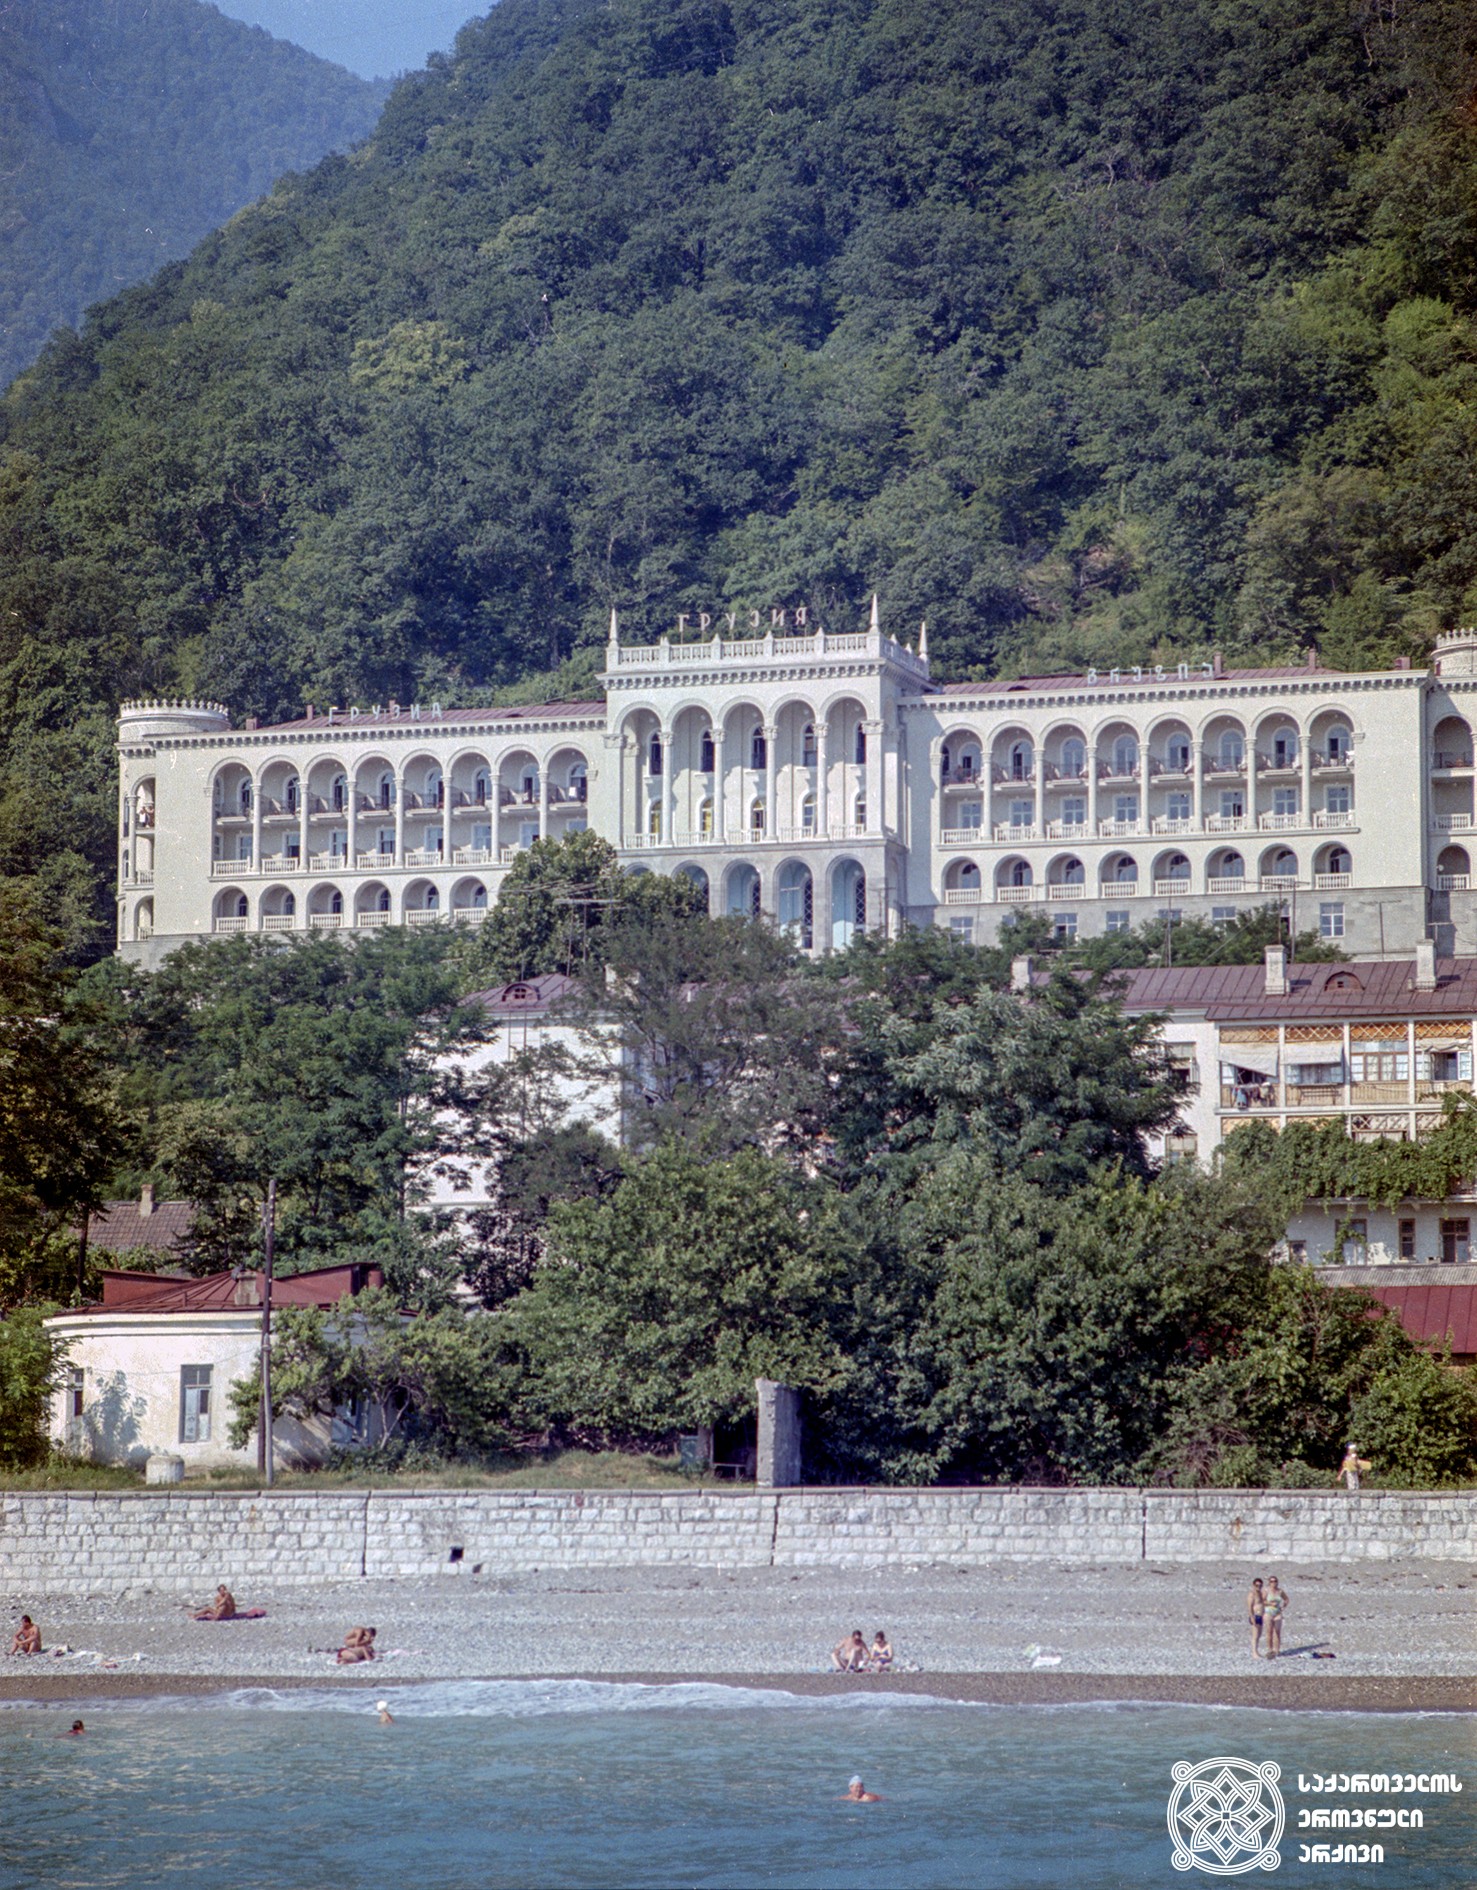 სანატორიუმი “გრუზია“, გაგრა. აფხაზეთი, 1973 წელი.
<br>
Sanatorium “Gruzia”, Gagra. Abkhazia, 1973.